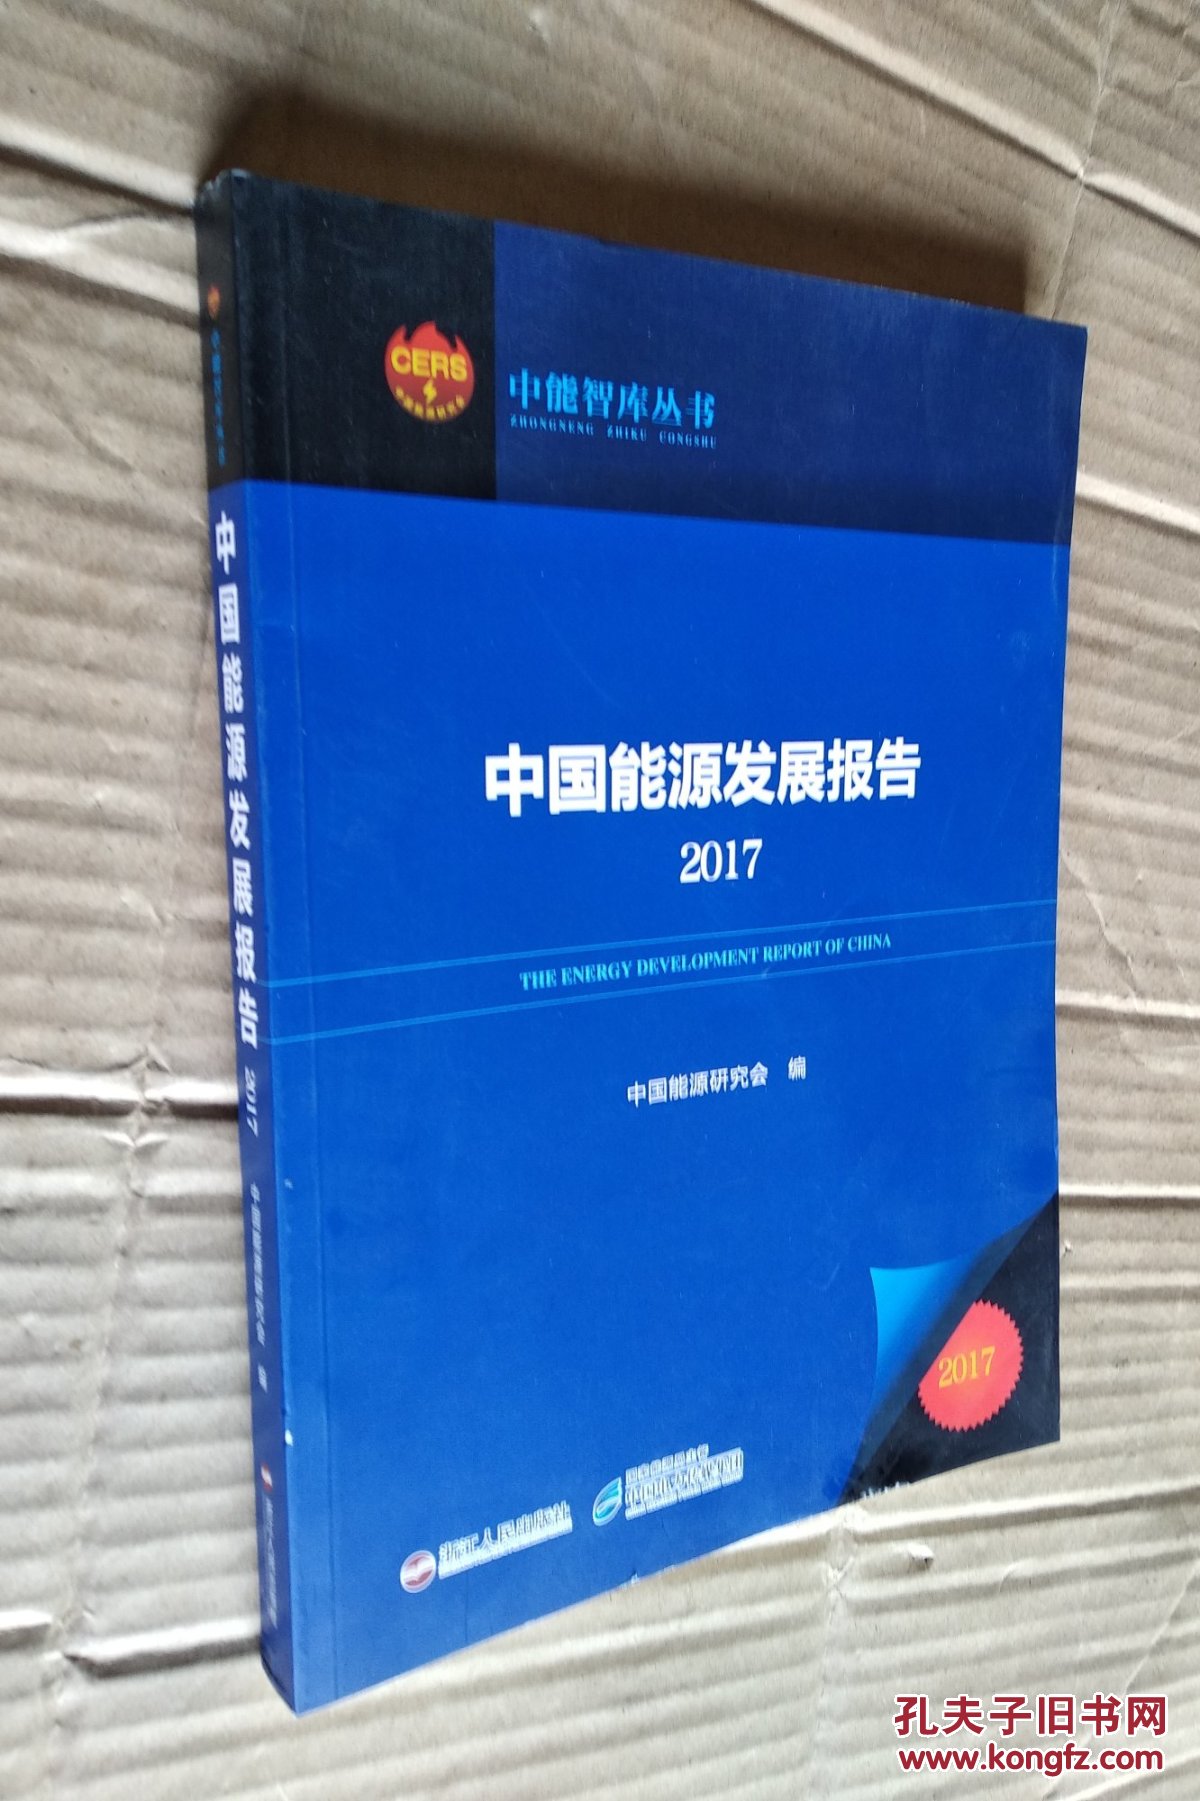 中国能源发展报告2017